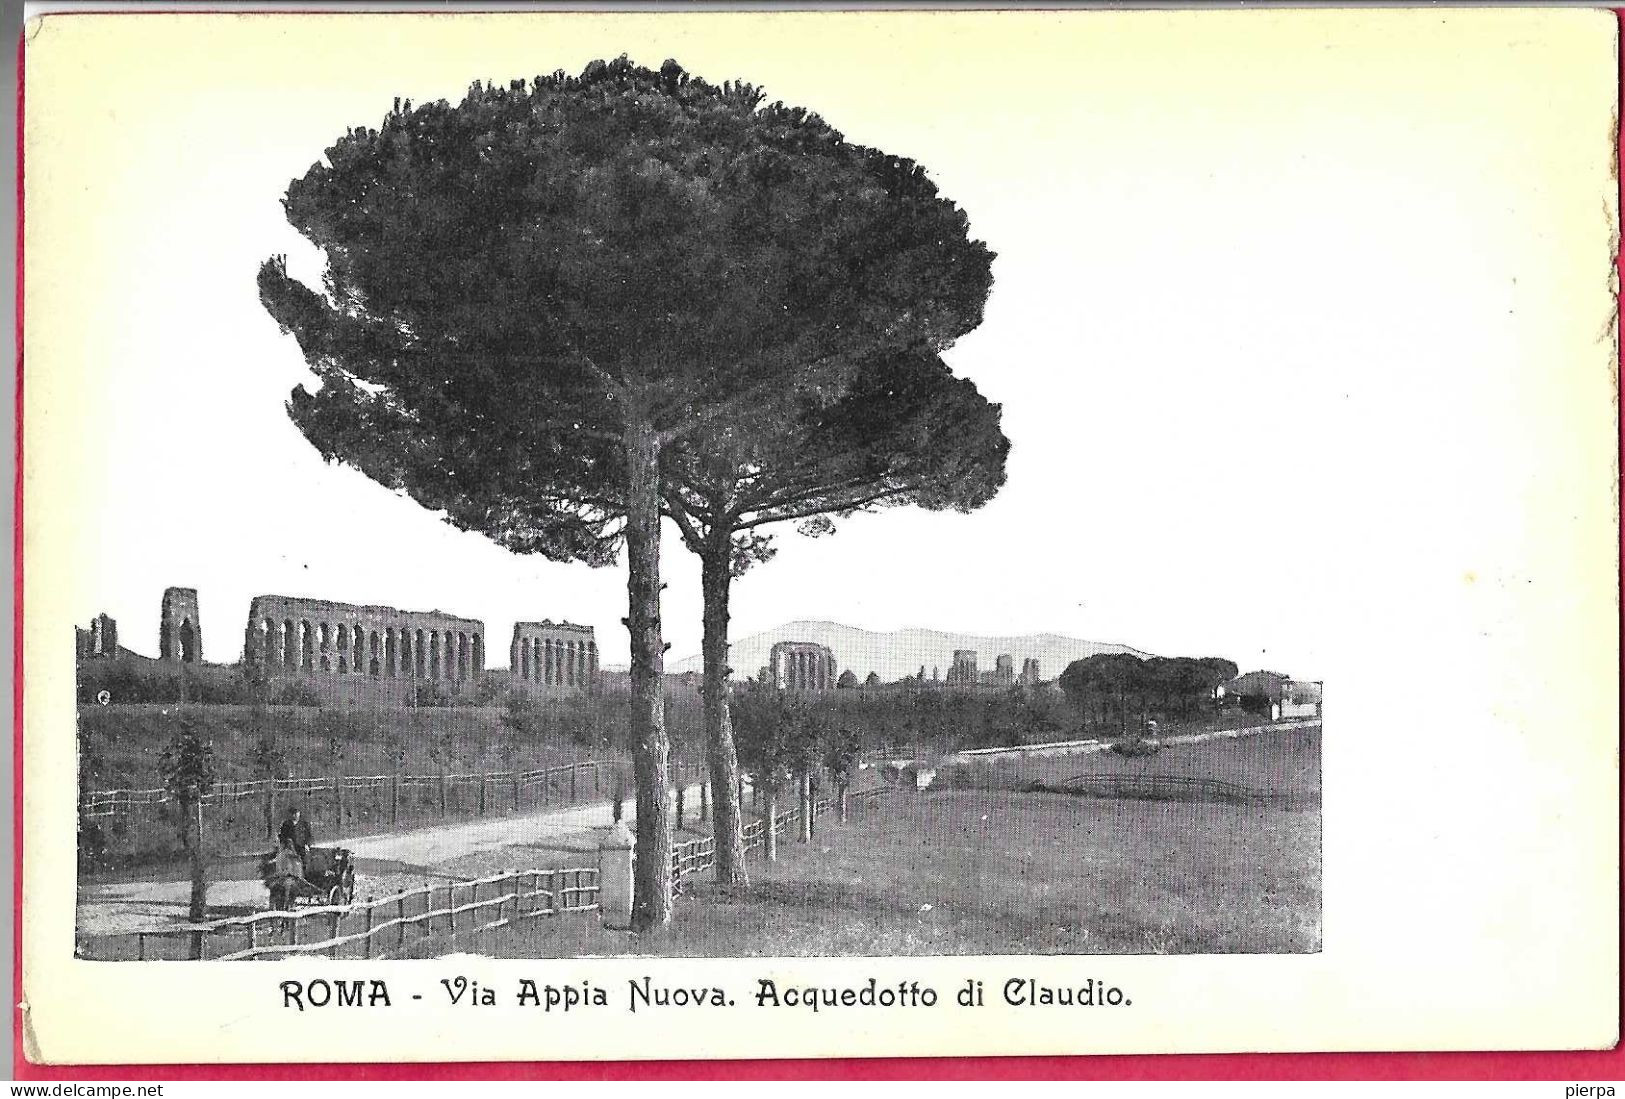 ROMA - VIA APPIA NUOVA - FORMATO PICCOLO - EDIZ. ORIGINALE ANNI 30 - NUOVA - Panoramic Views